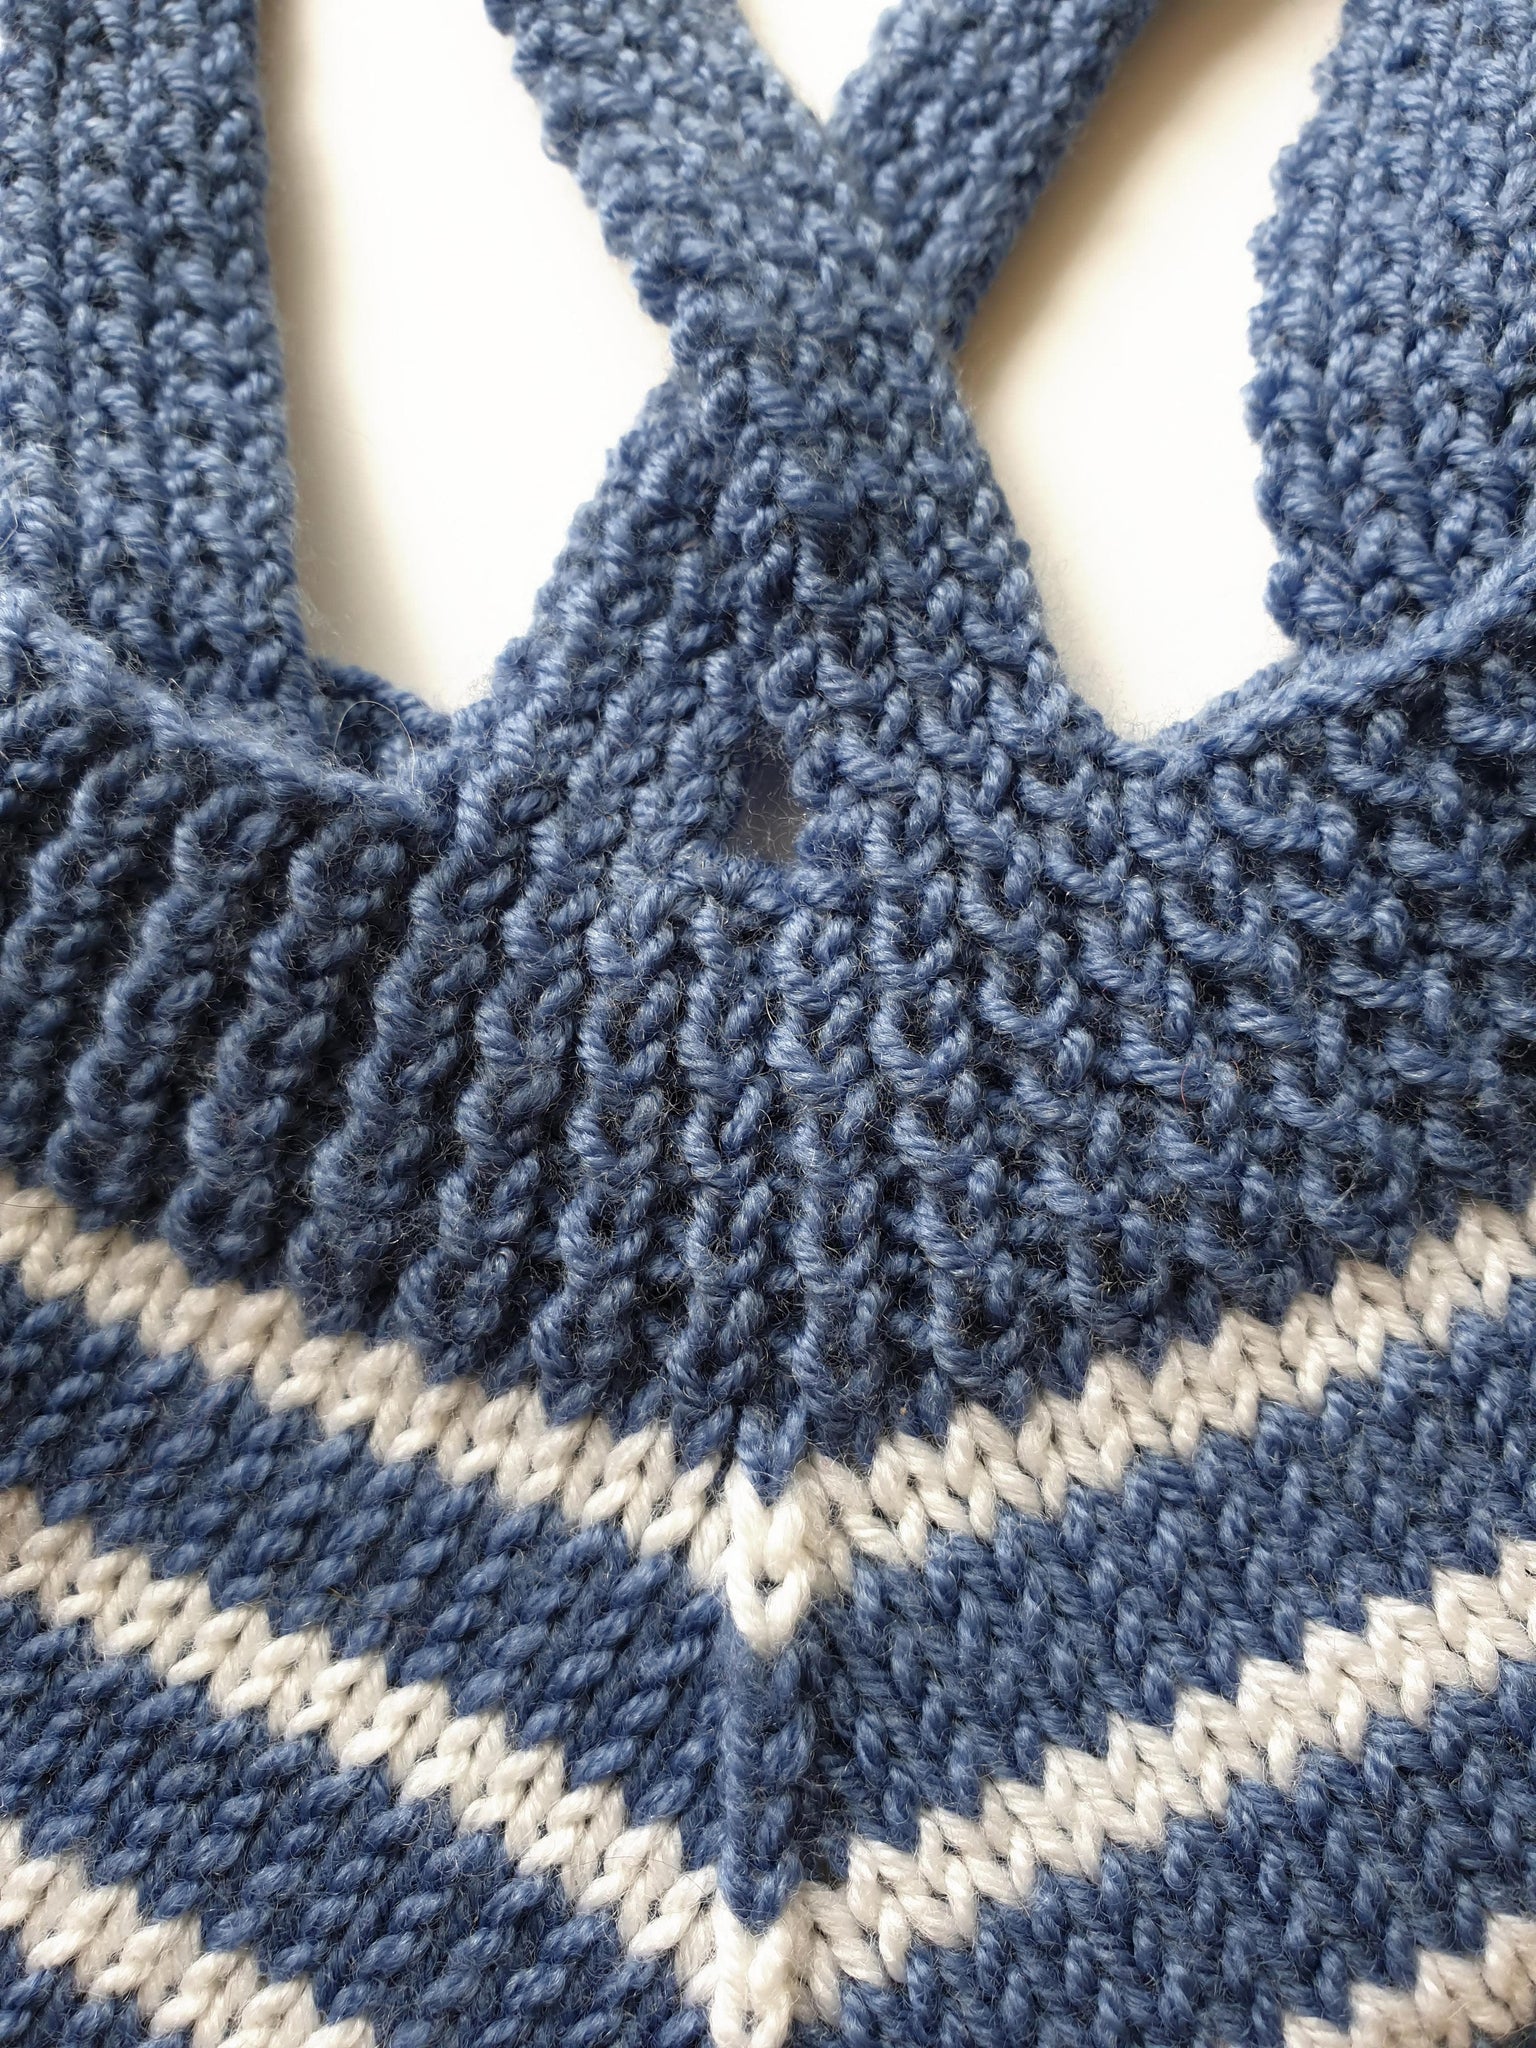 Combinaison Thé à tricoter : la combi bébé intemporelle – Anny Blatt